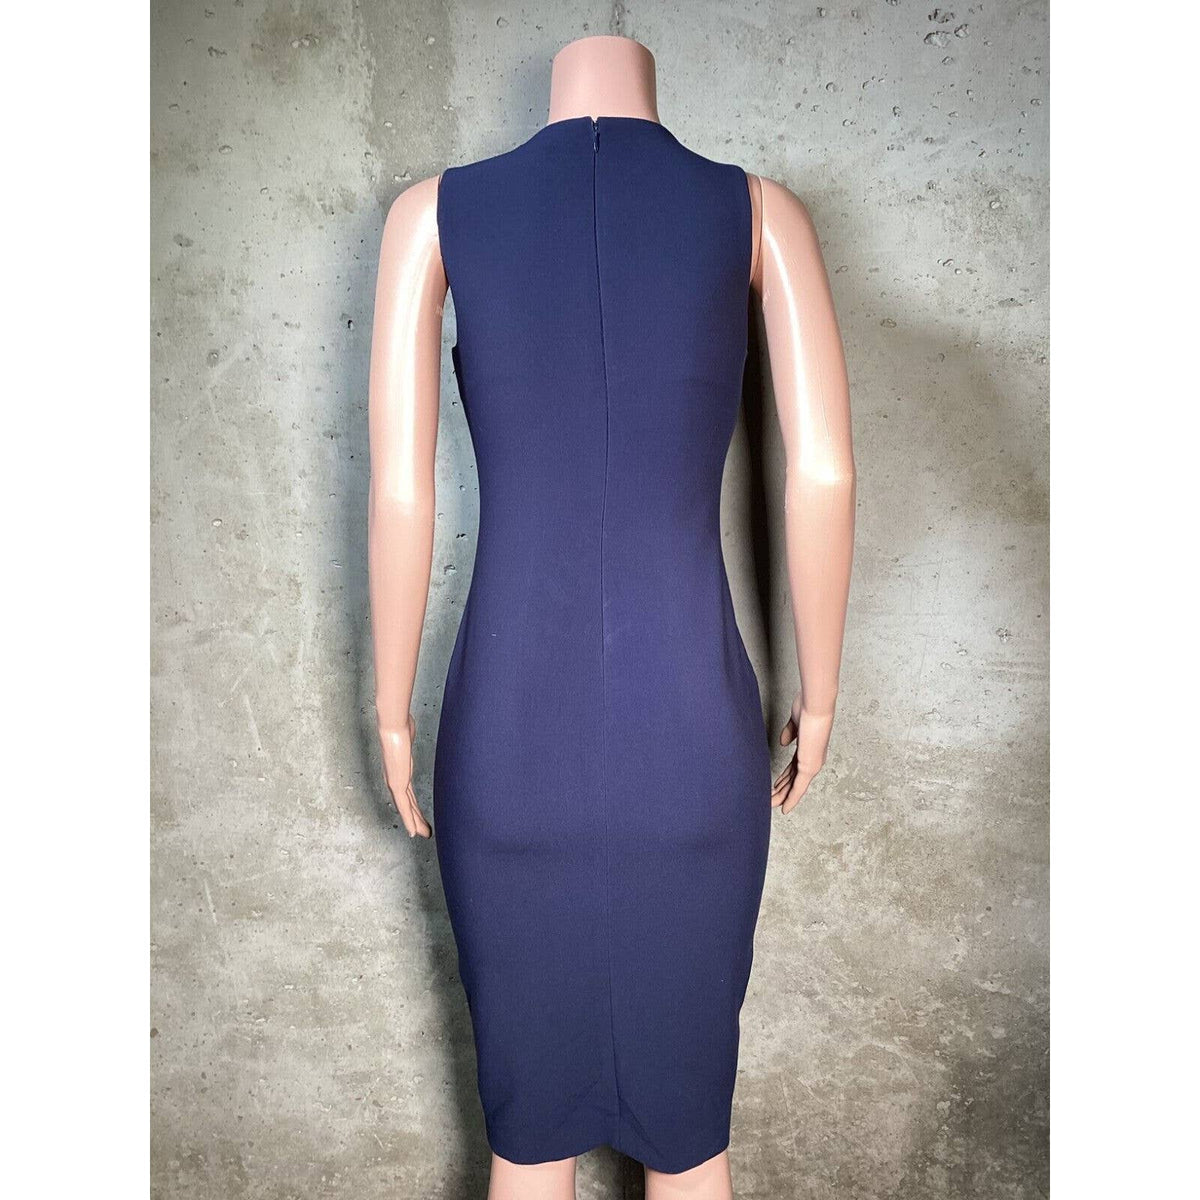 Likely Blue V-Neck Stretch Dress Sz 6